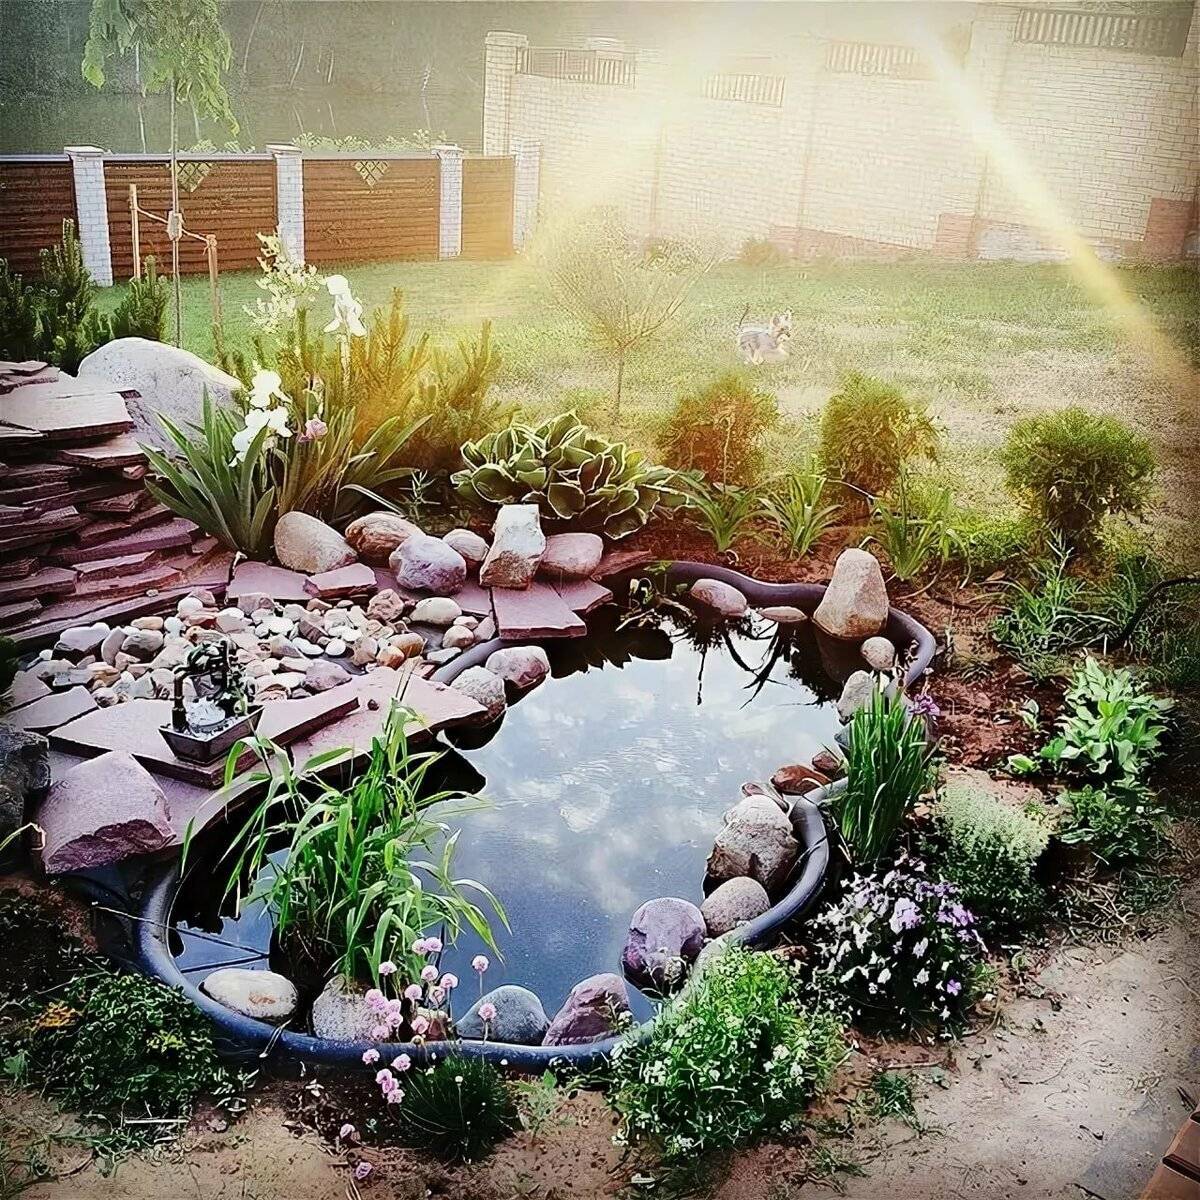 Как установить и оформить пластиковый пруд в саду. выбор чаши, декор и озеленение, личный опыт. фото — ботаничка